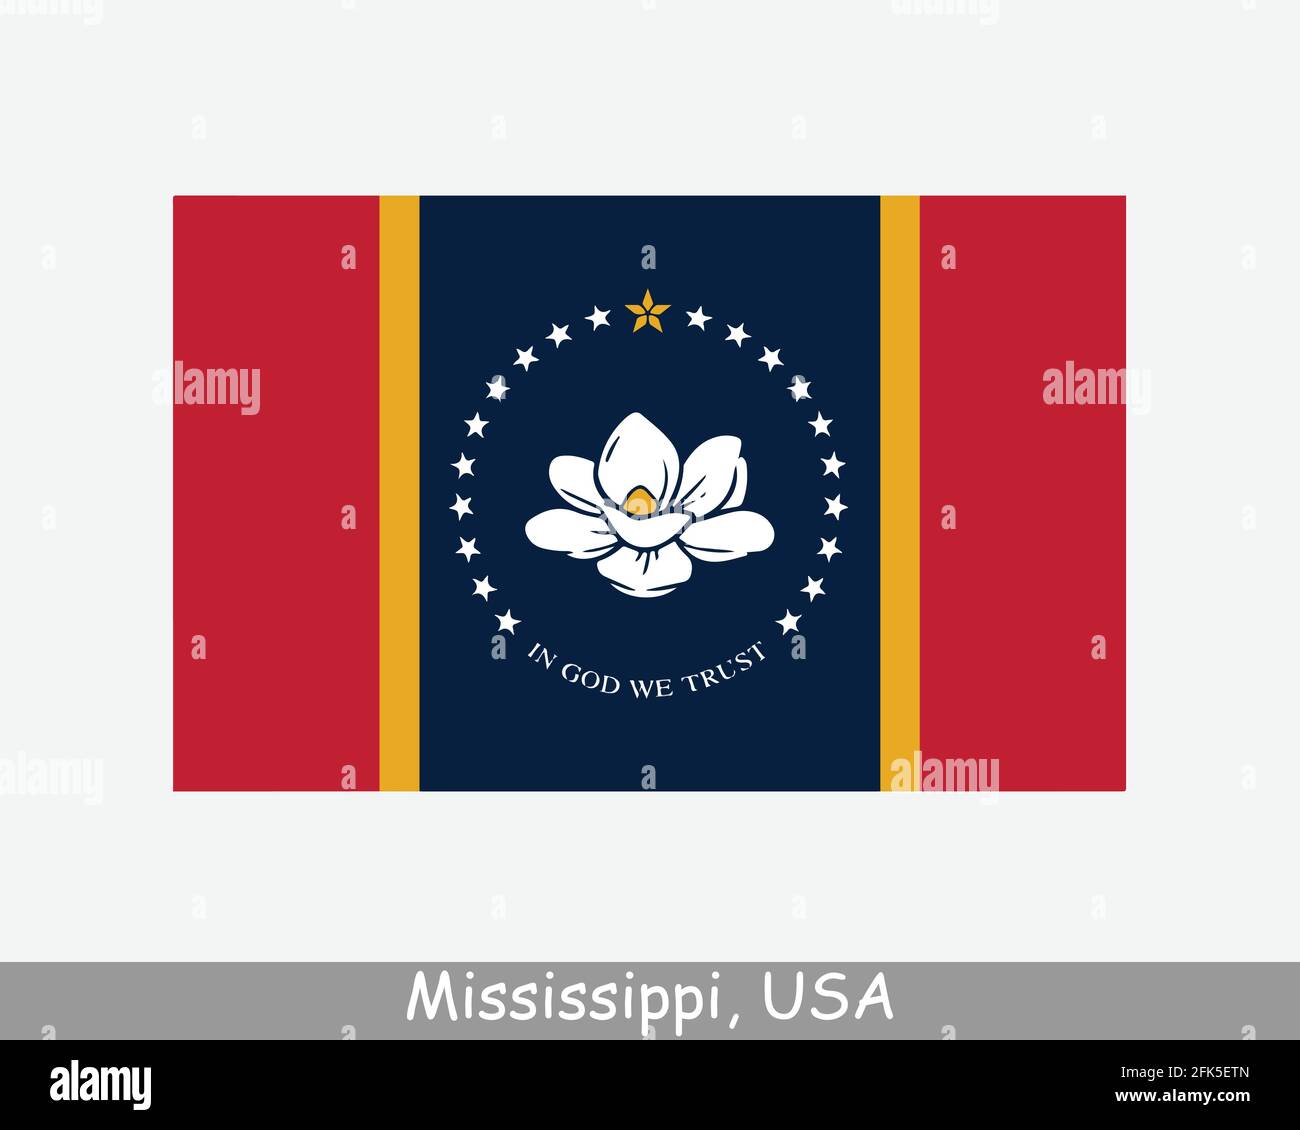 Mississippi USA Staatsflagge. Flagge von MS, USA isoliert auf weißem Hintergrund. Vereinigte Staaten, Amerika, American, Vereinigte Staaten von Amerika, US-Bundesstaat. Vektor Stock Vektor